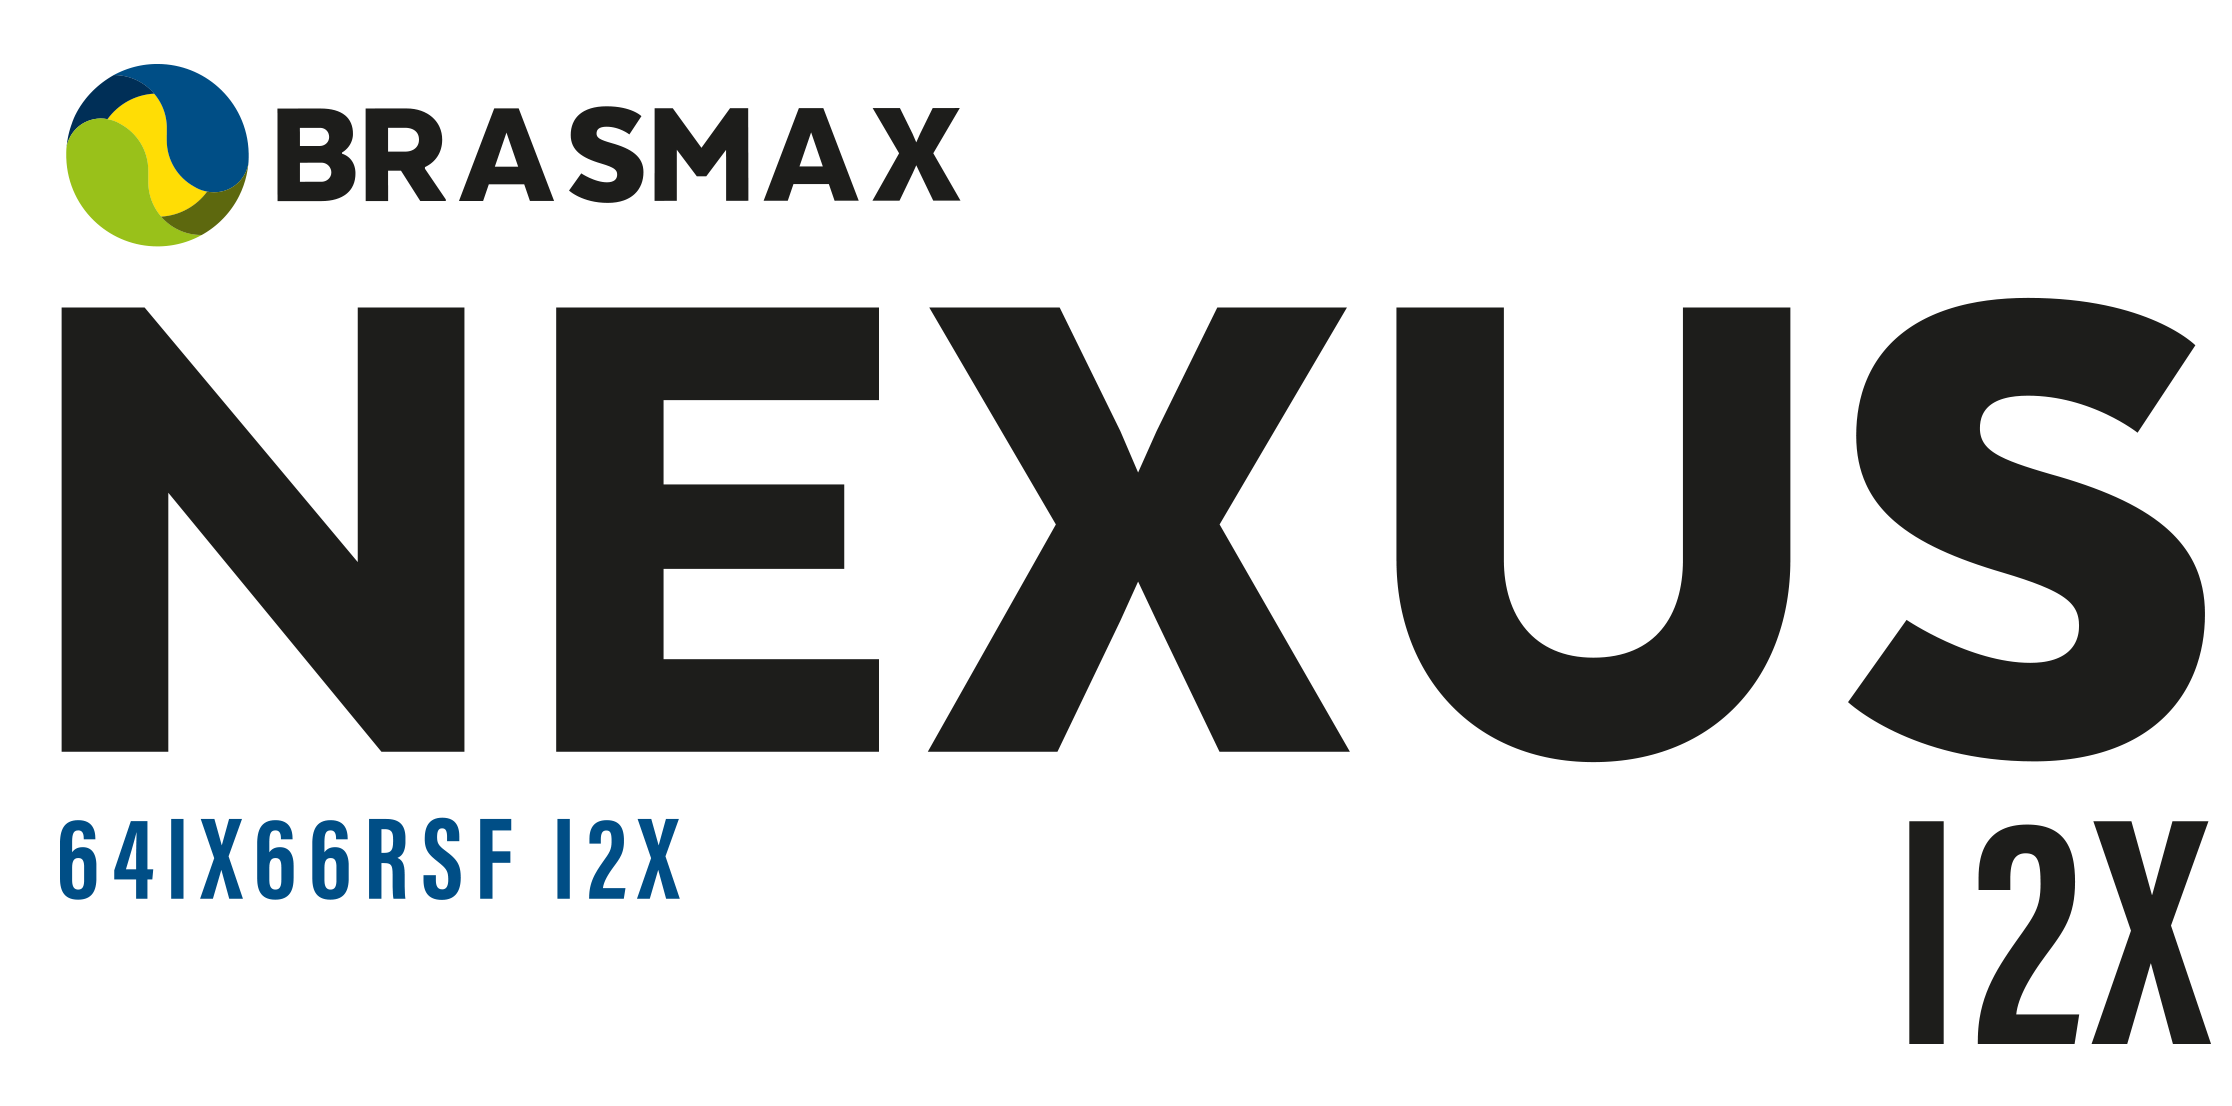 SEMENTE DE SOJA BRASMAX - BMX NEXUS 64IX66 RSF I2X - Uniagro